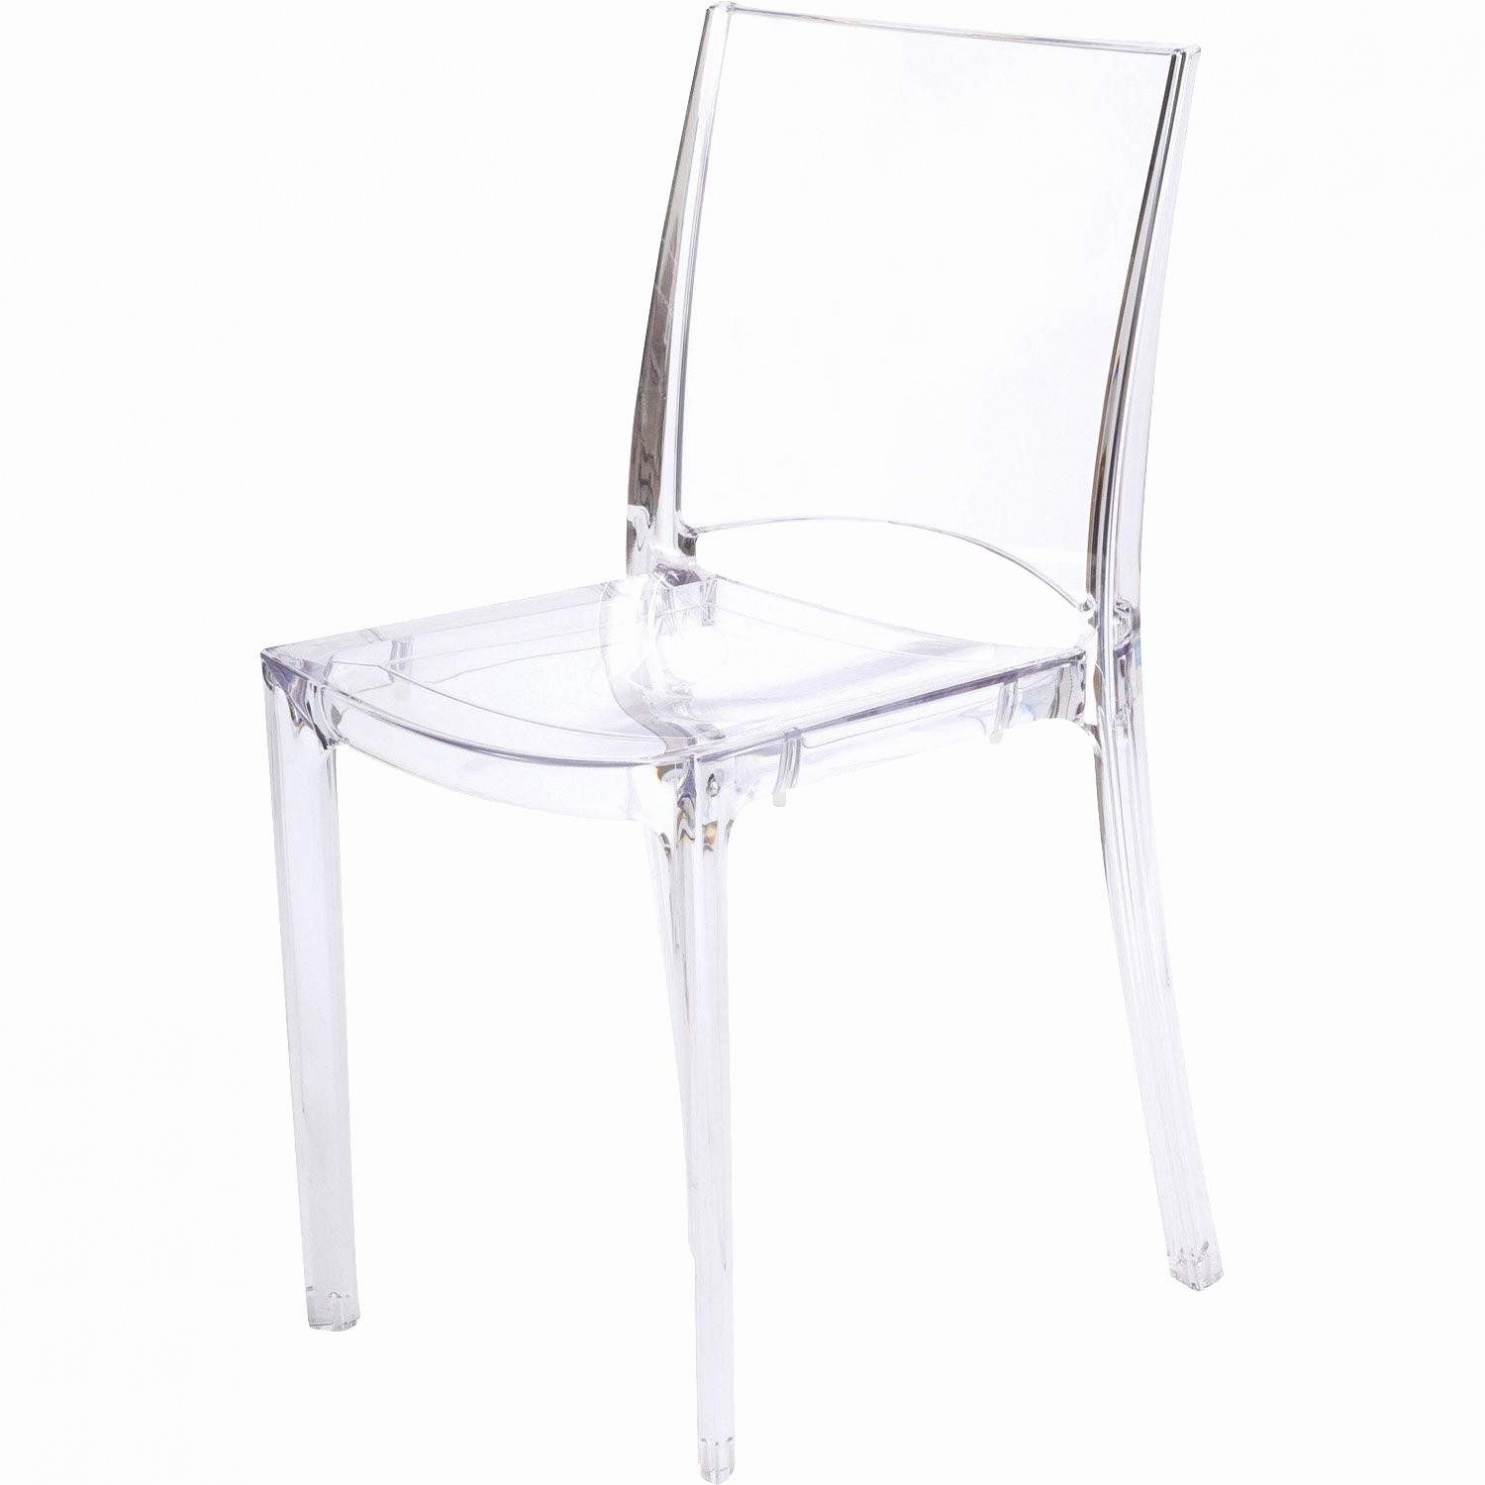 chaise aluminium jardin fauteuil aluminium jardin nouveaufauteuil fauteuil rond exterieur of fauteuil rond exterieur